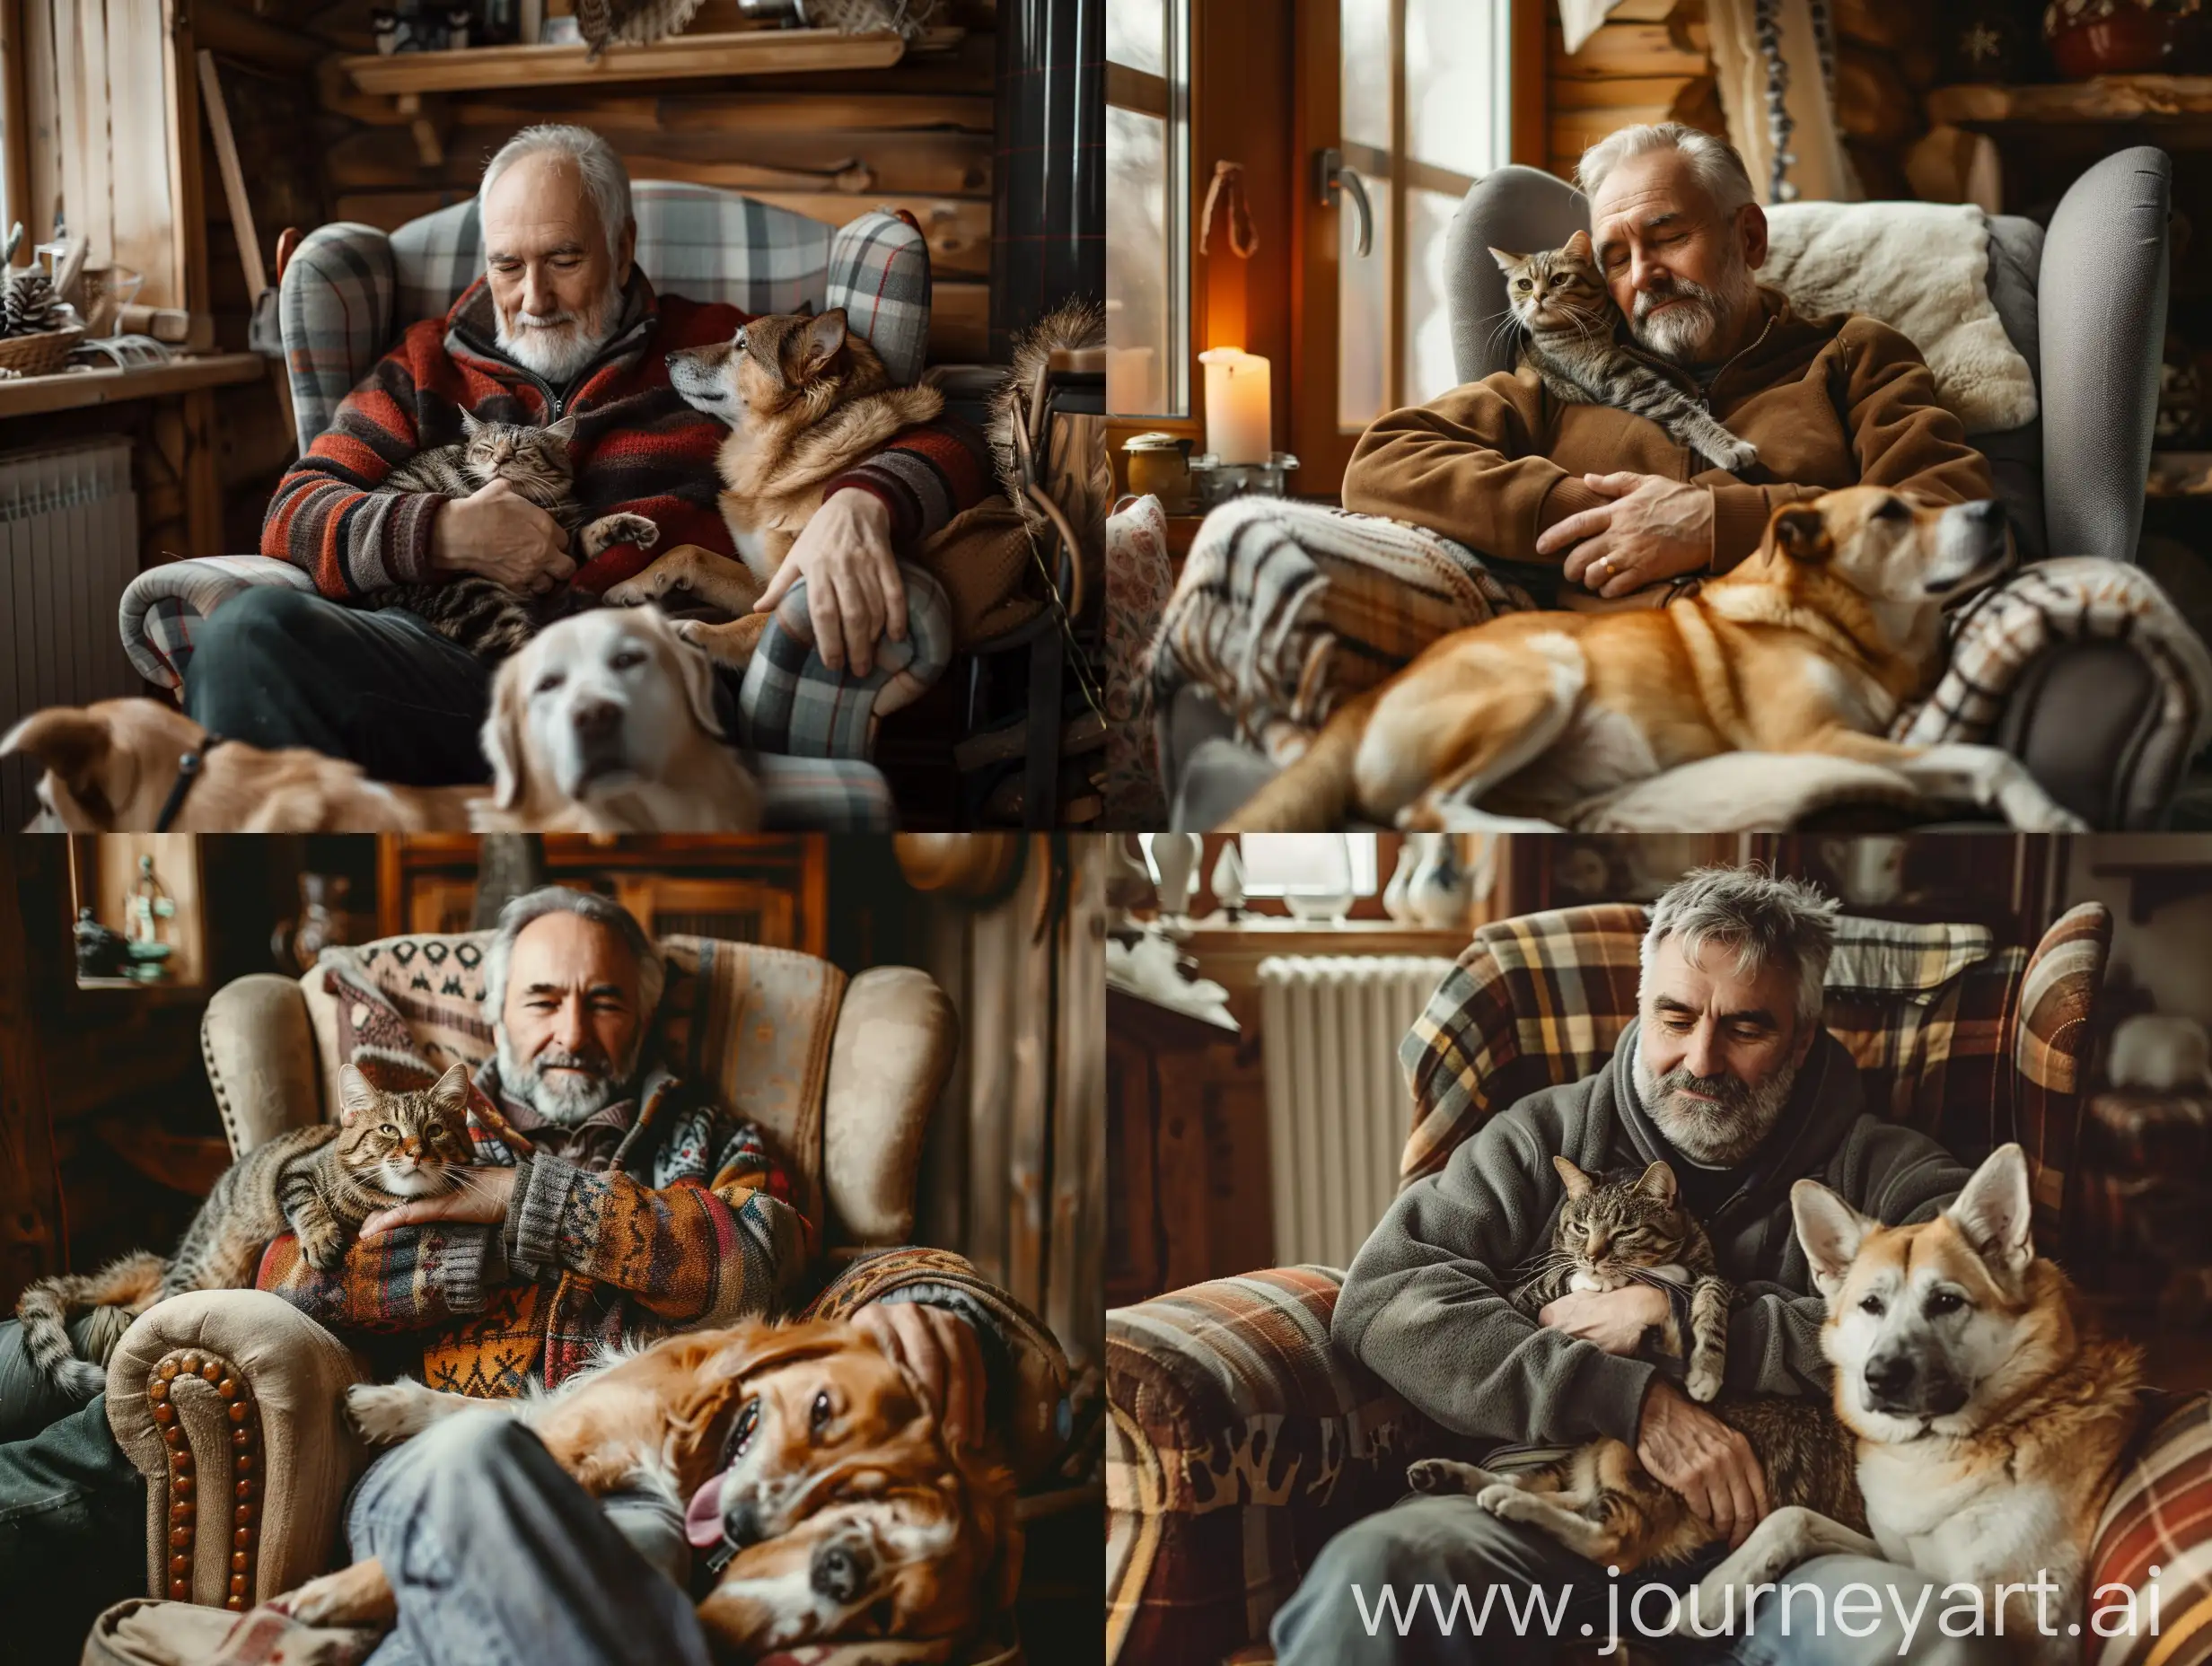 Un hombre de mediana edad, sentado en un sillón, abrazando a un gato, un perro tumbado a sus pies, ambiente cálido y acogedor